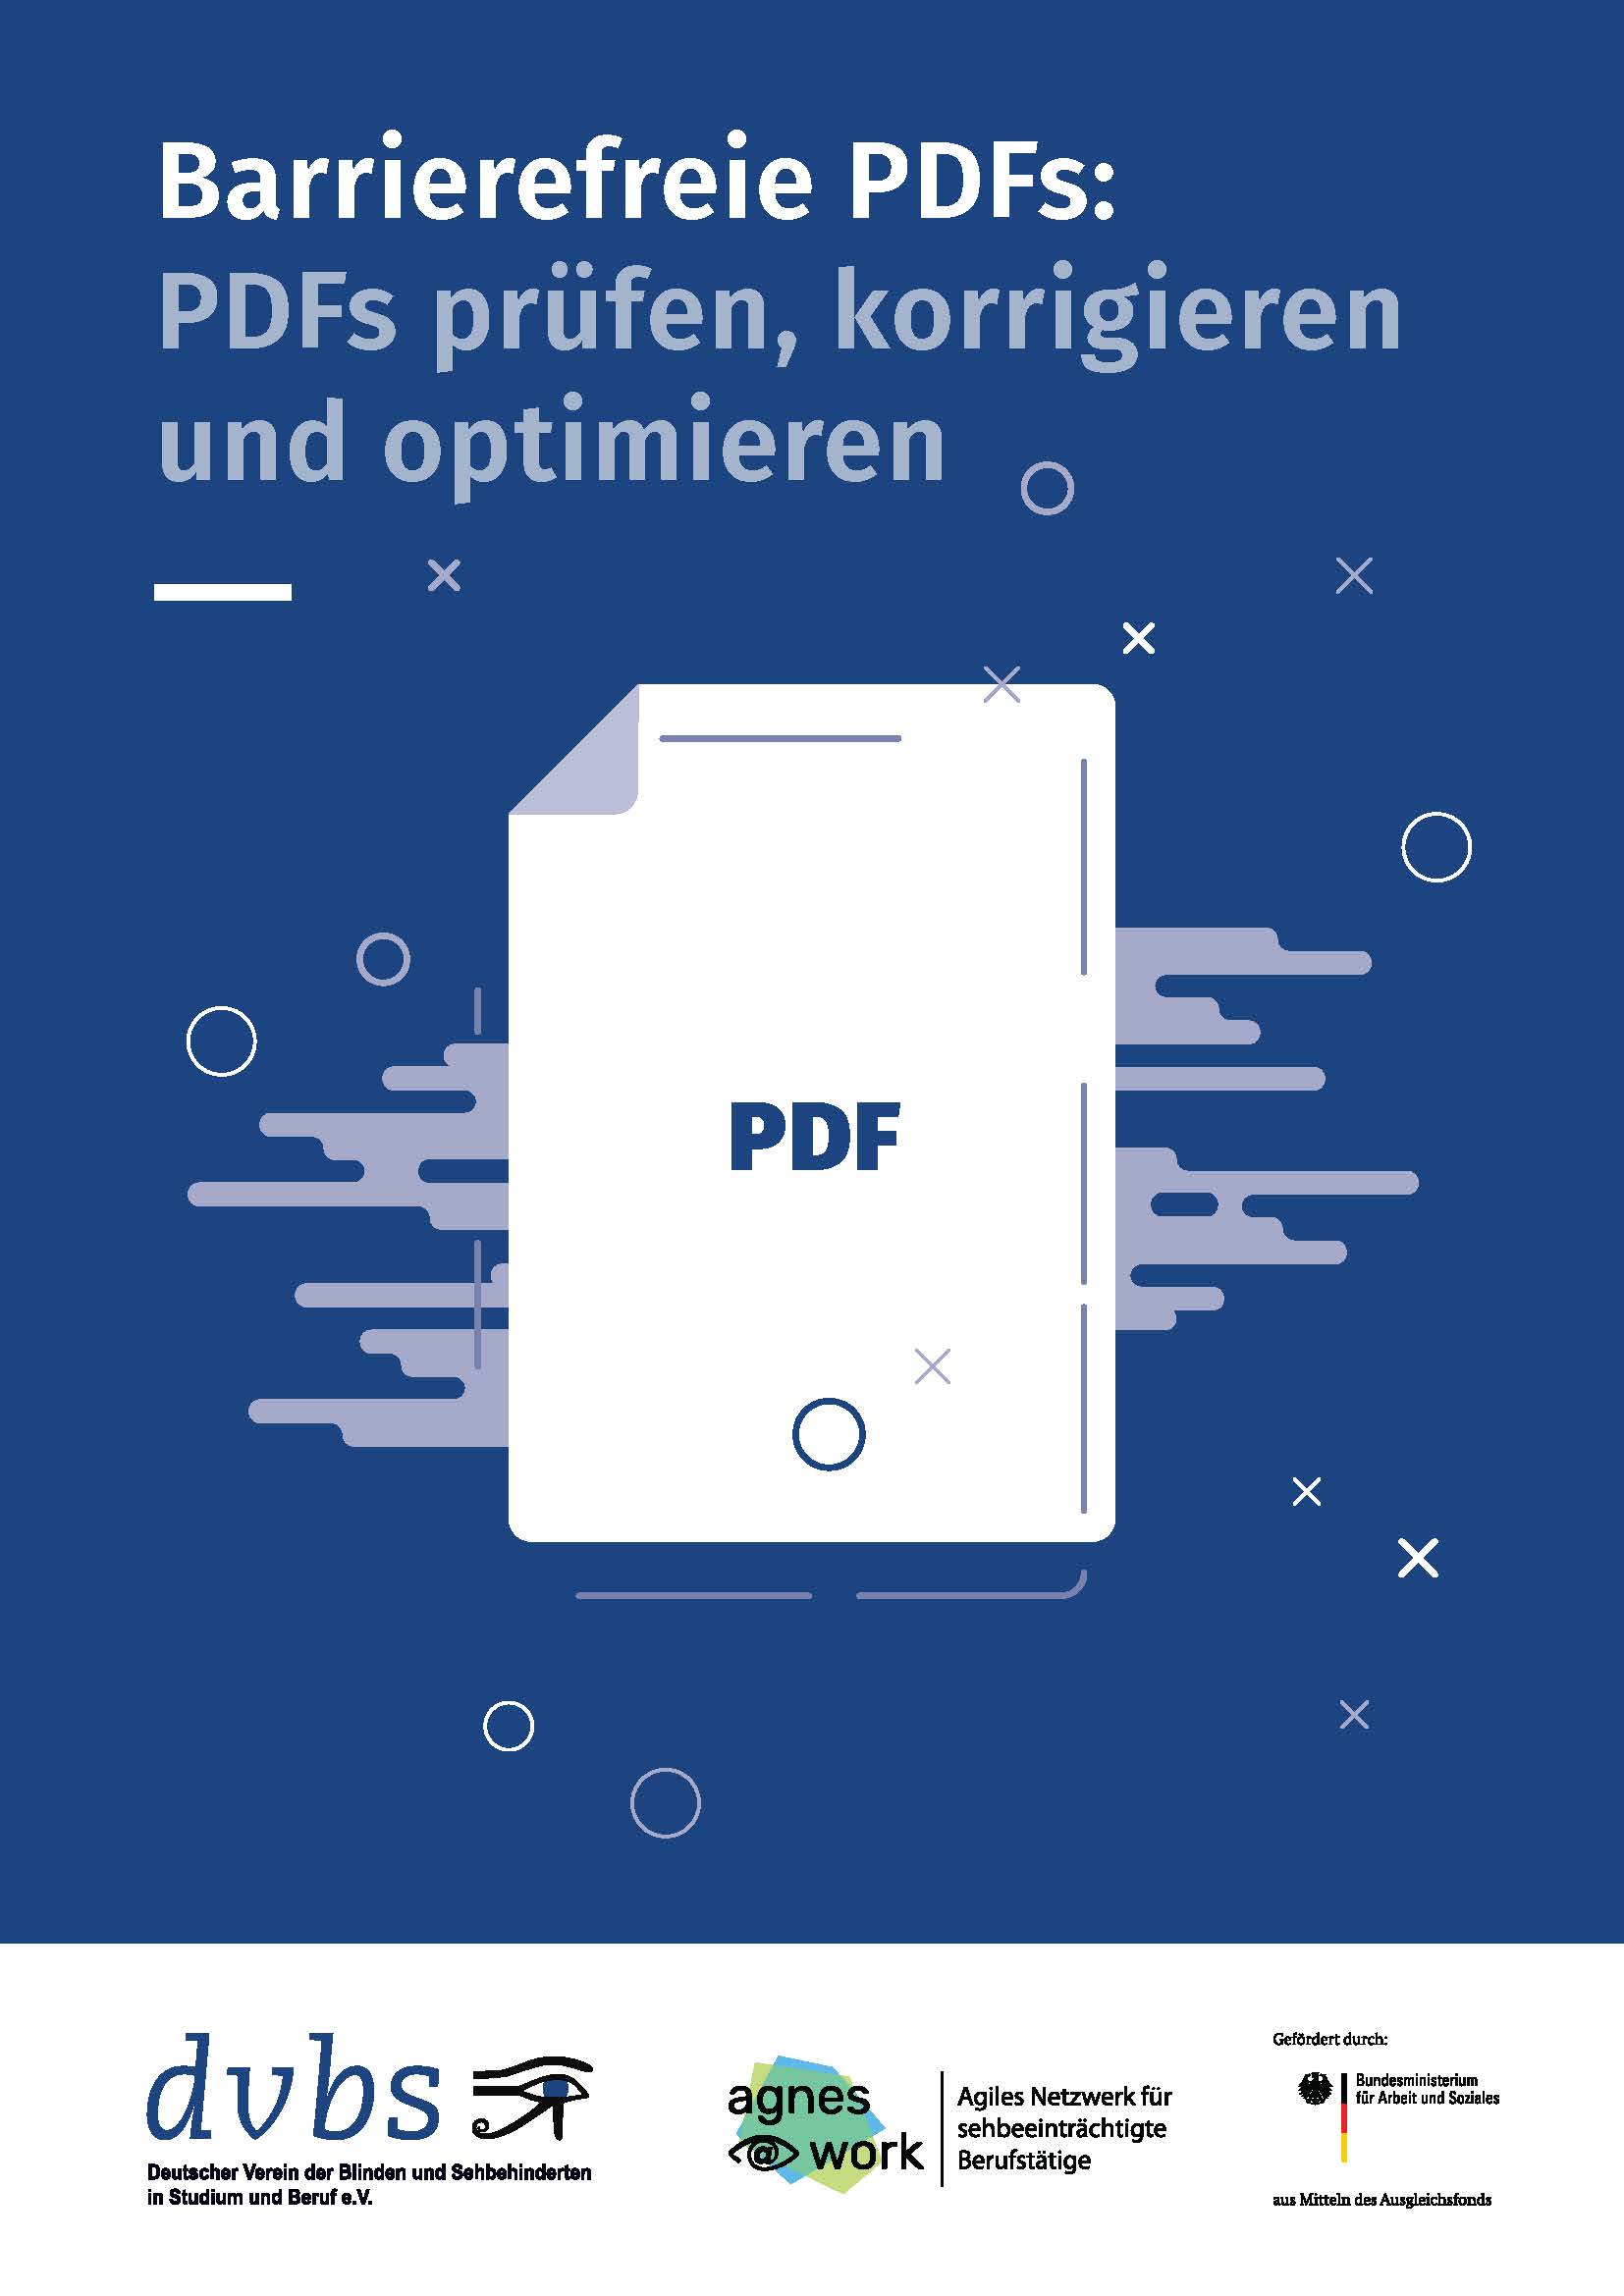 Titelseite der Handreichung Barrierefreie PDFs: PDFs prüfen, korrigieren und optimieren des dvbs, agnes@work, gefördert durch das BMAS mit Link zur vergrößerten Ansicht.